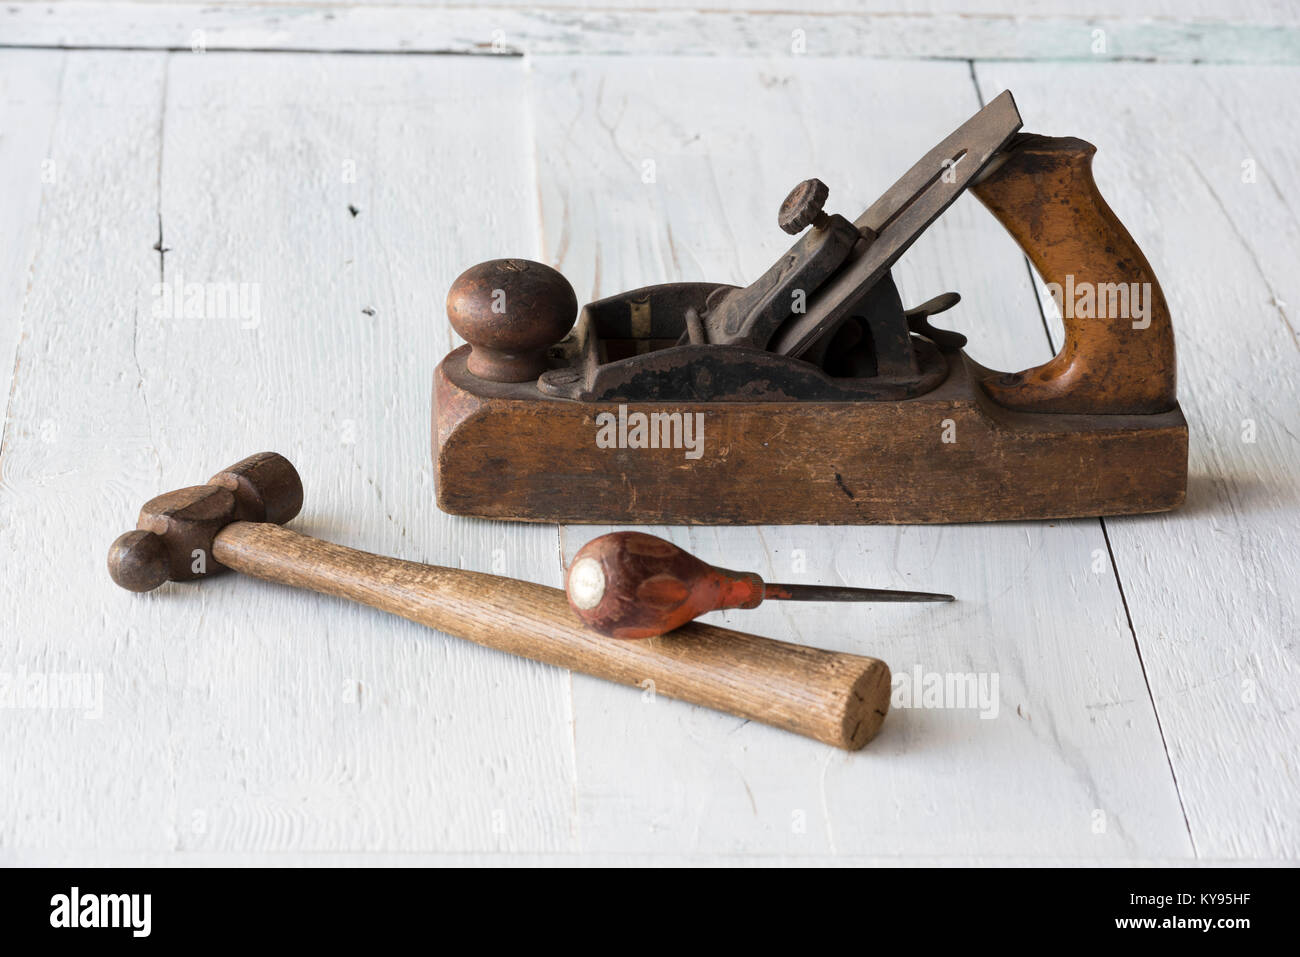 Sammlung von antiken, verwitterte vintage Tools, Hammer, Awl und Holzklotz Ebene, gegen verwitterten weiß lackierten Holz Hintergrund Stockfoto